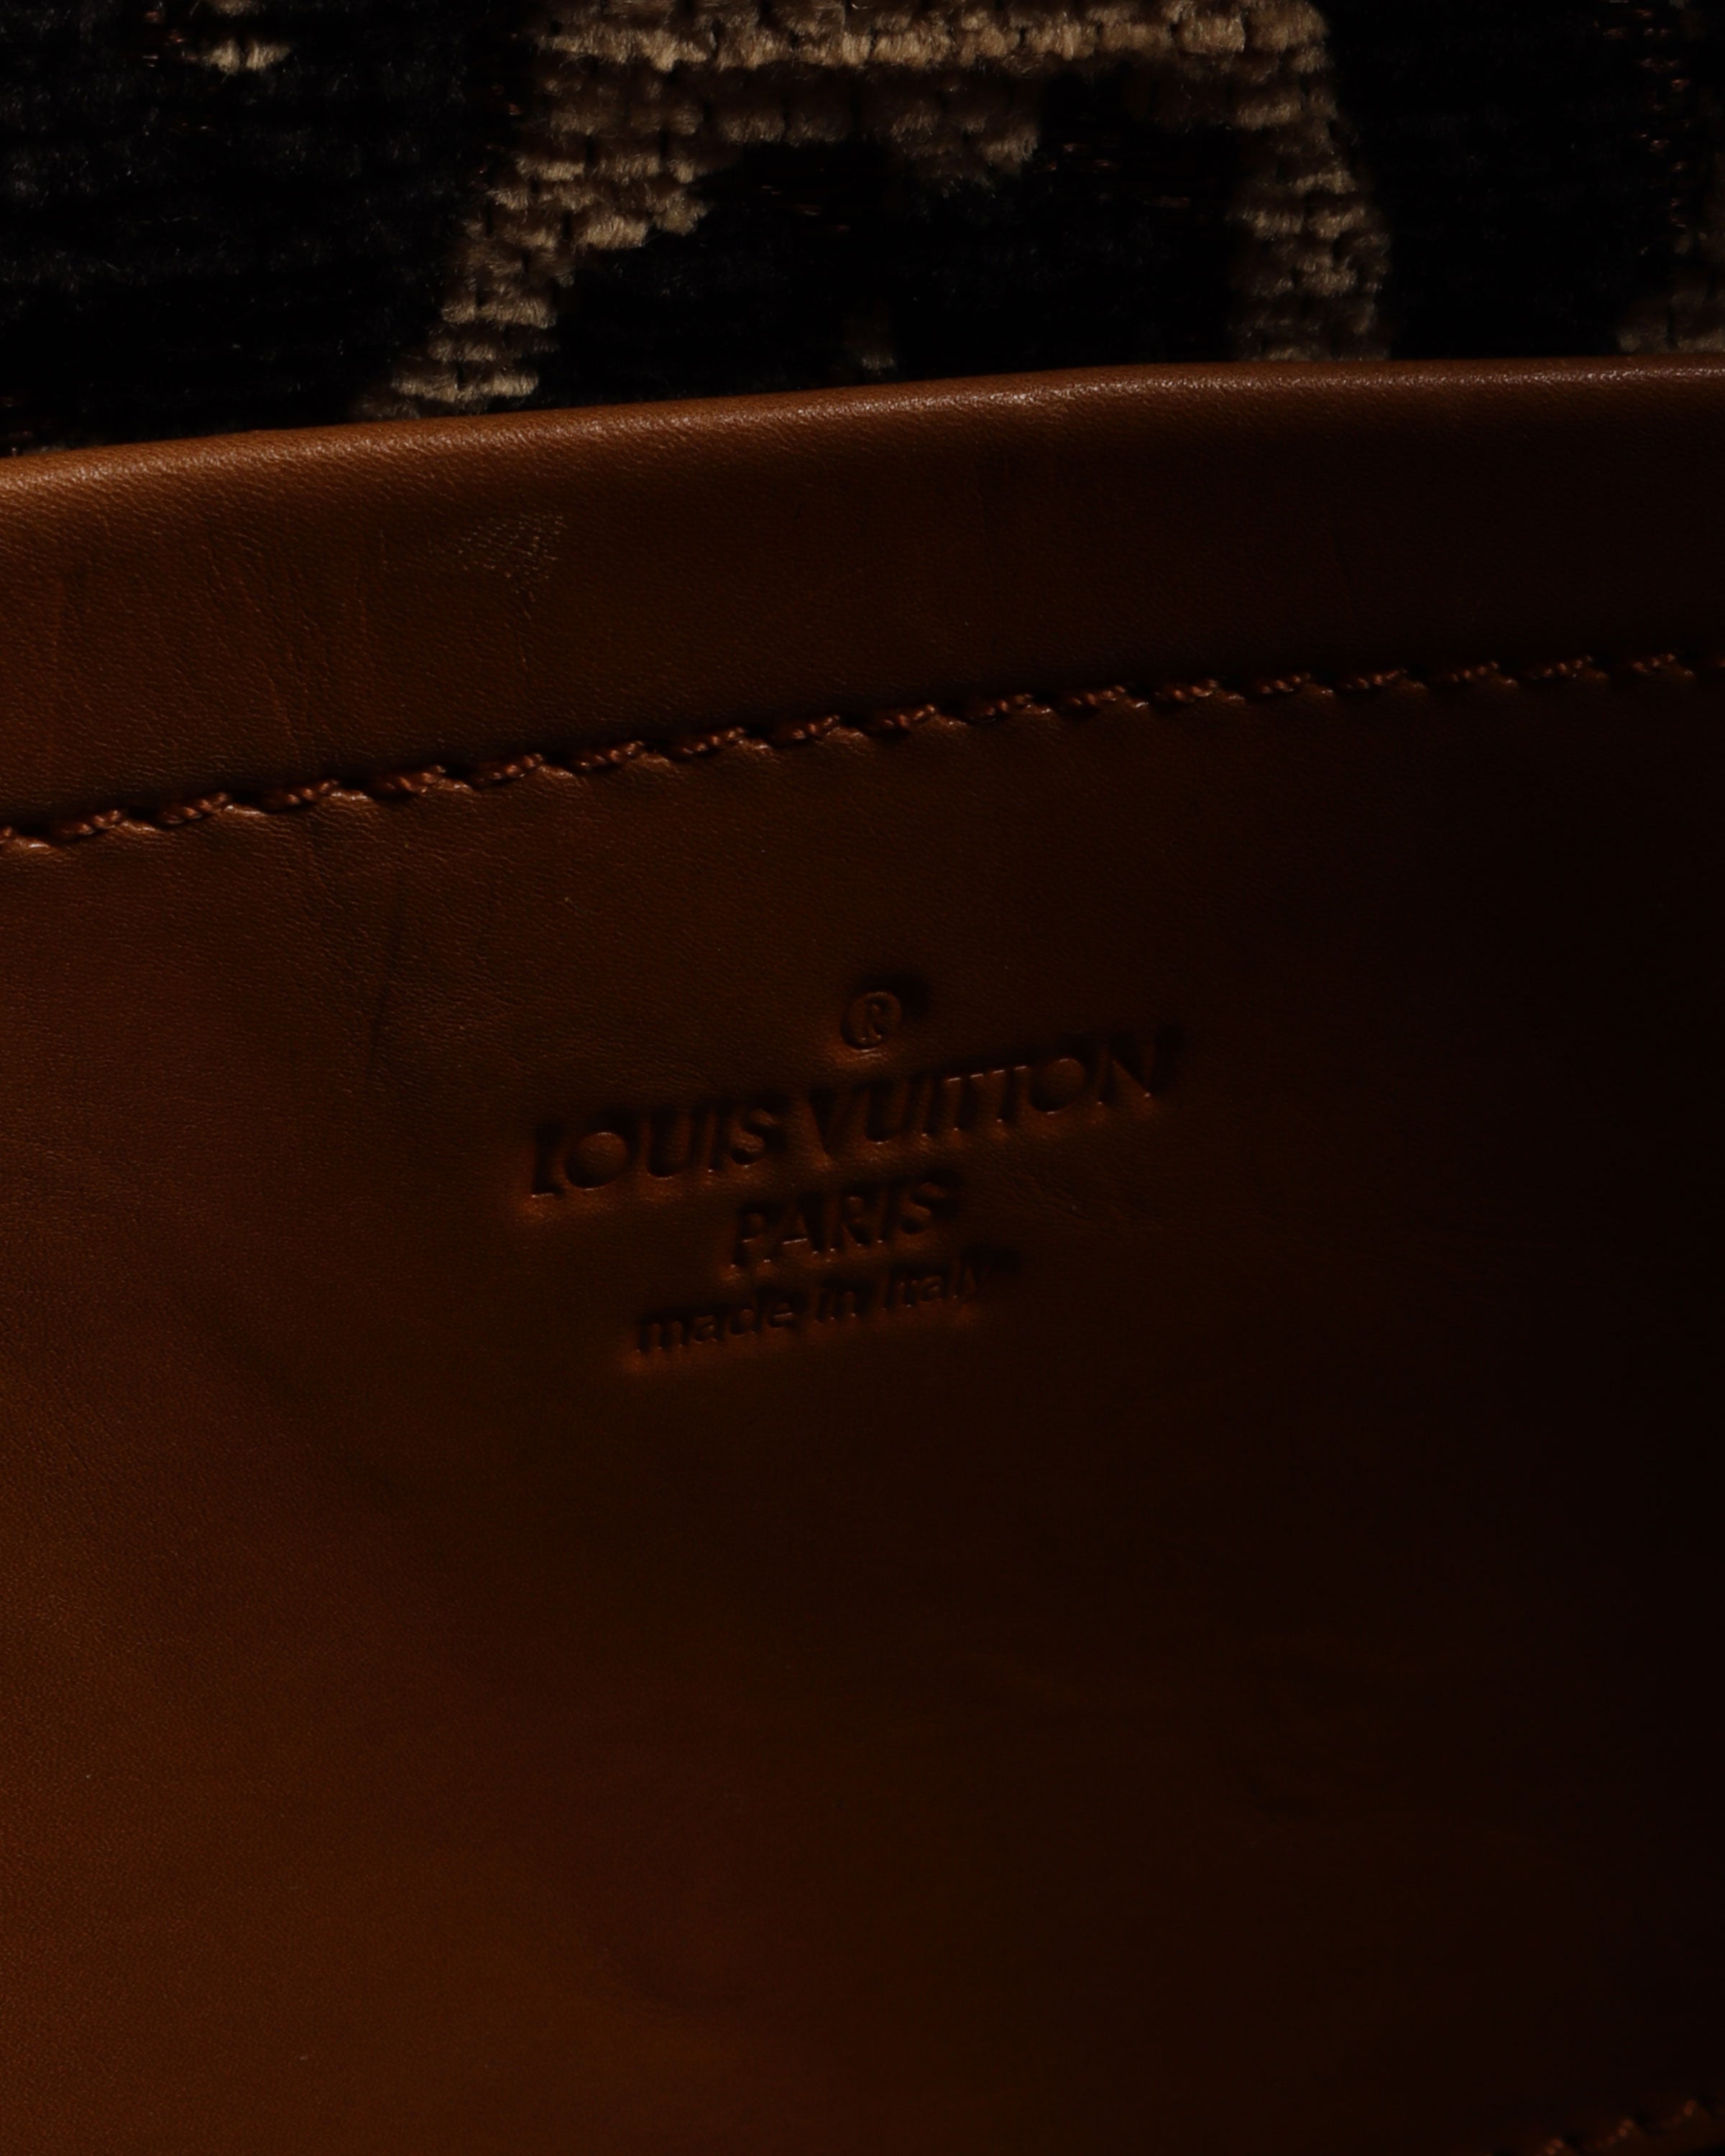 Vachetta Leather Frontier Suitcase